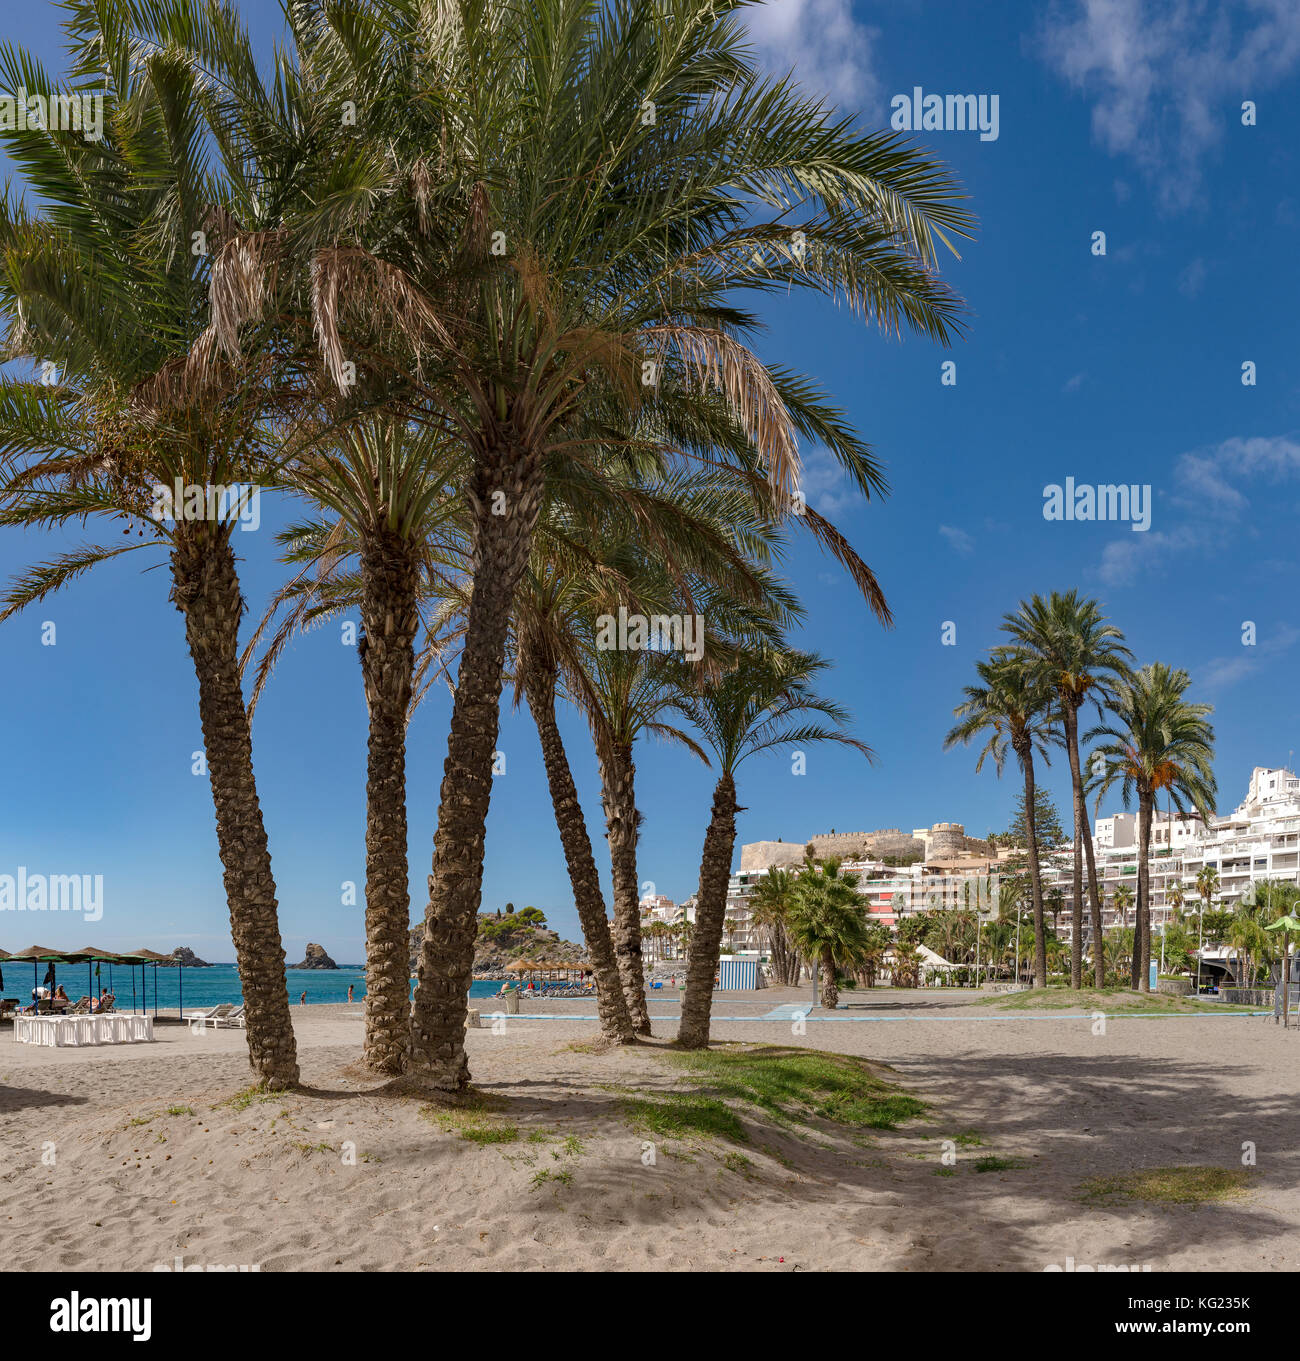 Las palmeras en la playa de Almuñecar, Costa Tropical, España *** *** título Local de la ciudad, el pueblo, el bosque, la madera, los árboles, Verano, playa, mar, Foto de stock